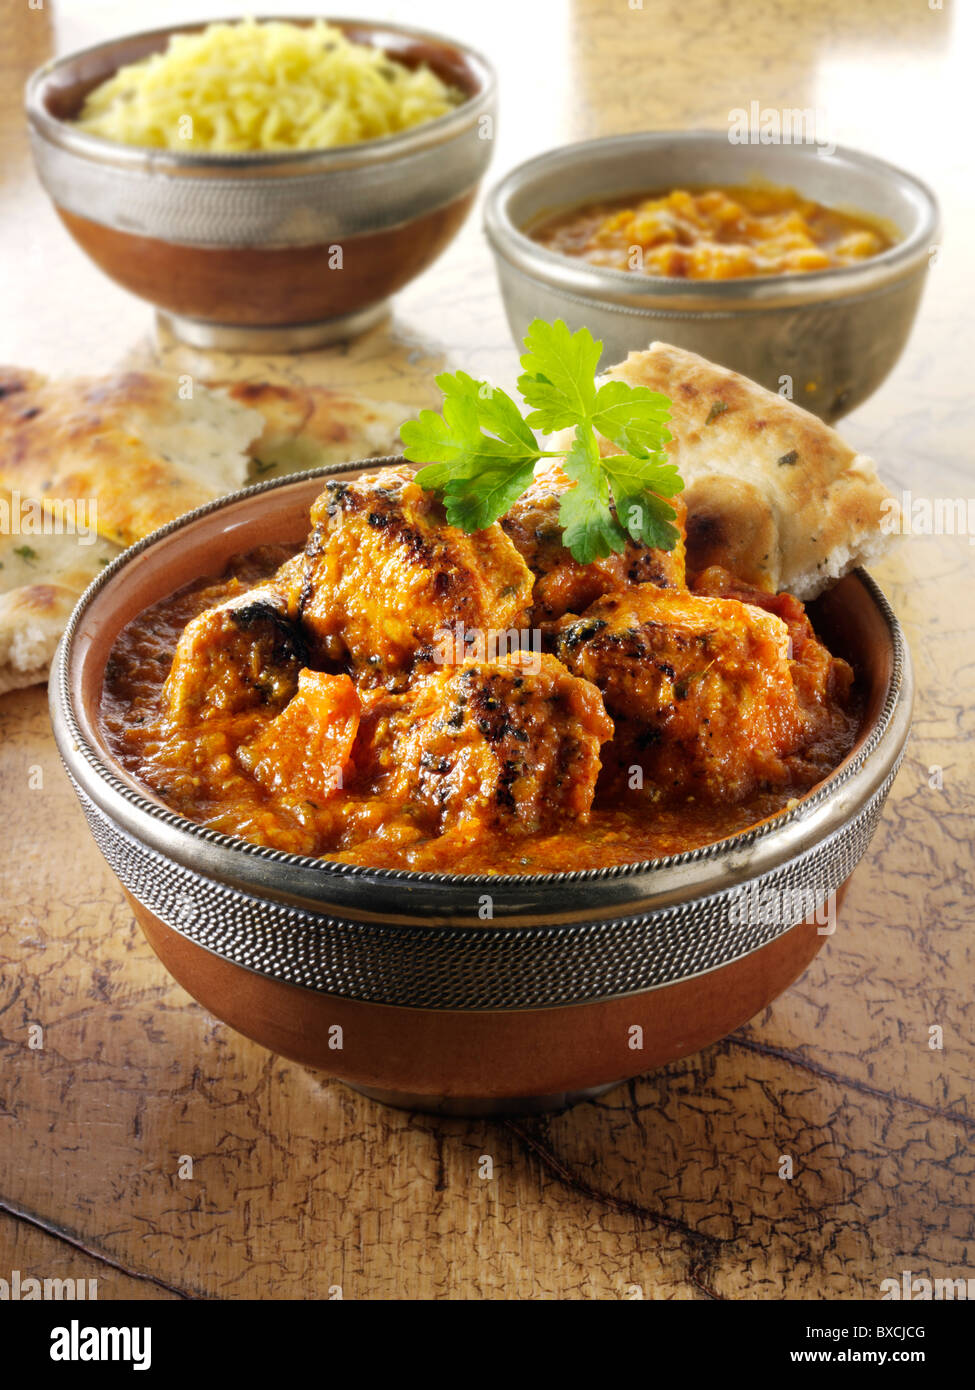 Dopiaza Hühnercurry & Reis, indisches Essen Rezept Bilder, Fotos & Bilder Stockfoto